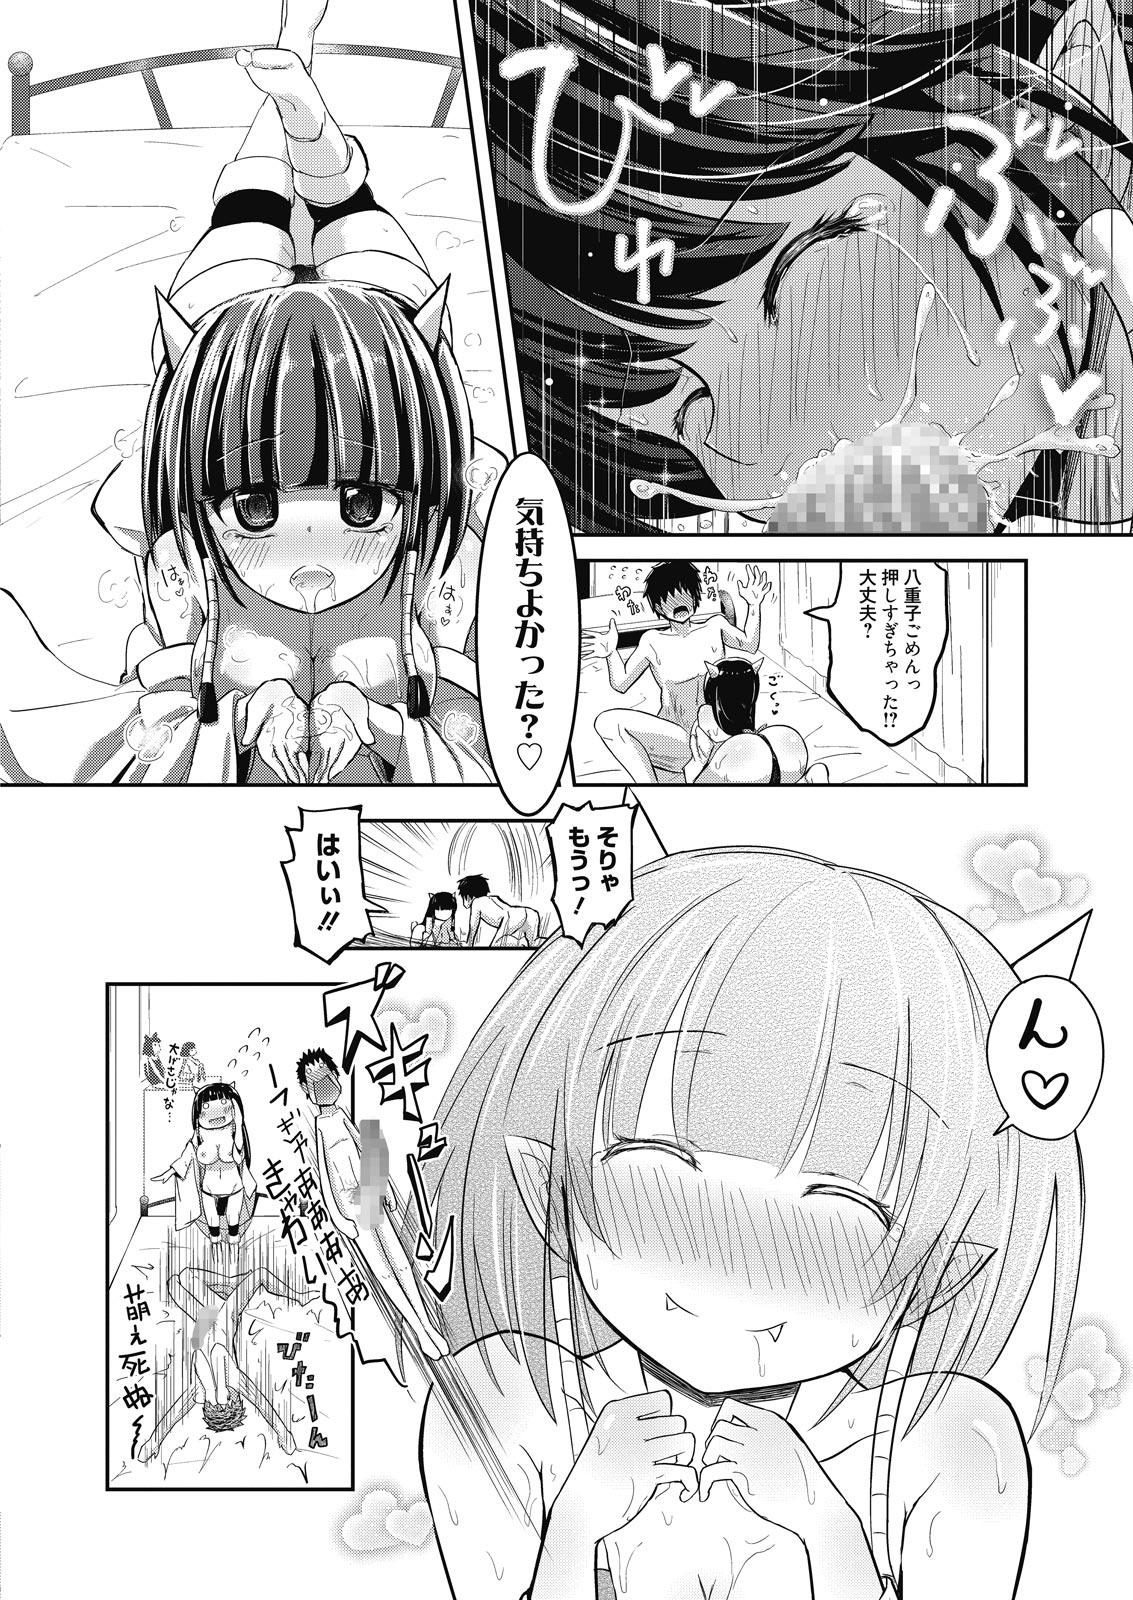 Web Manga Bangaichi Vol. 7 web 漫画ばんがいち Vol.7